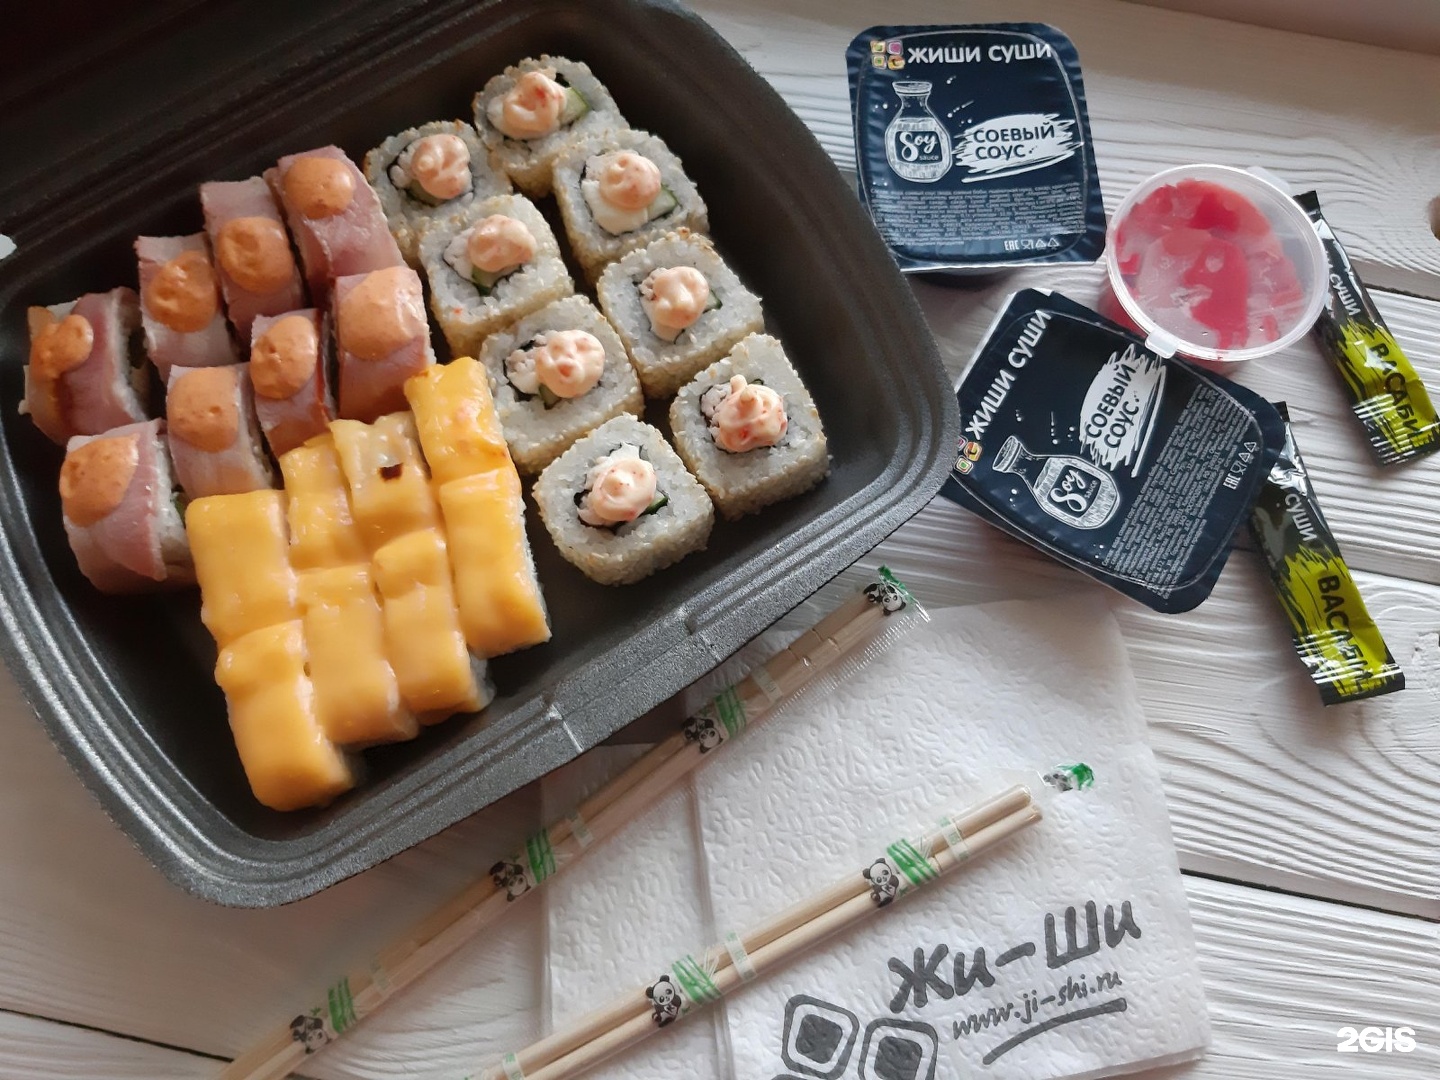 Суши-бар ЖИШИ суши